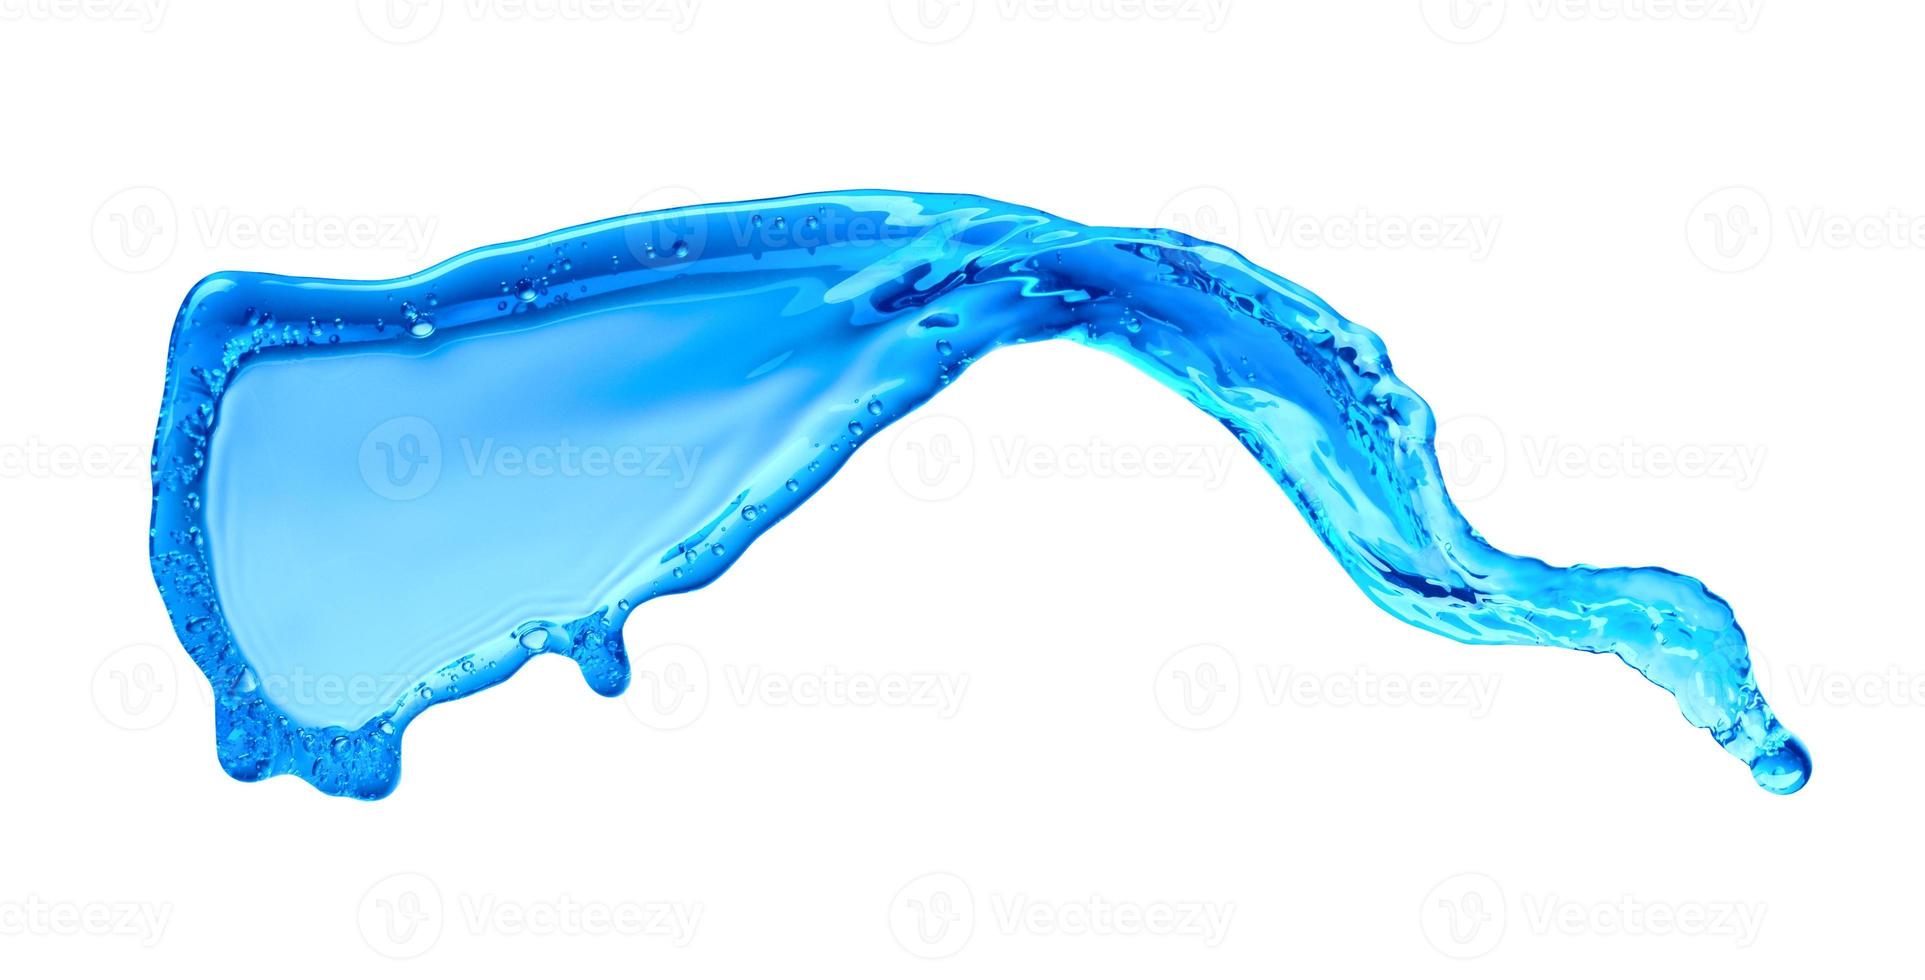 hellblaue transparente Wasserwellenoberfläche mit Spritzblase auf Wasserweiß. foto